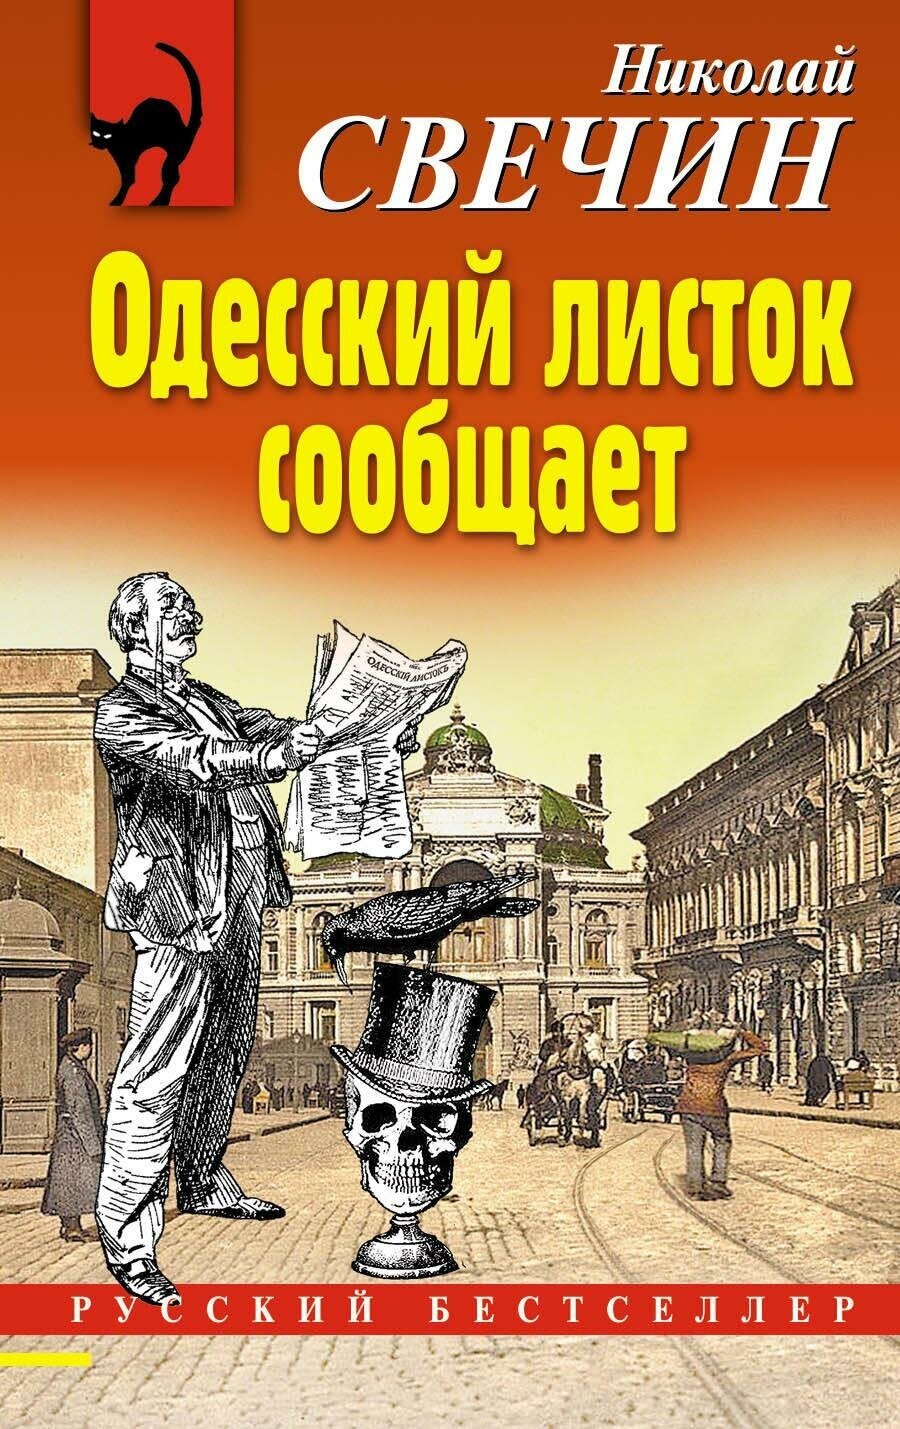 Свечин Николай. Одесский листок сообщает. Русский бестселлер (обложка)